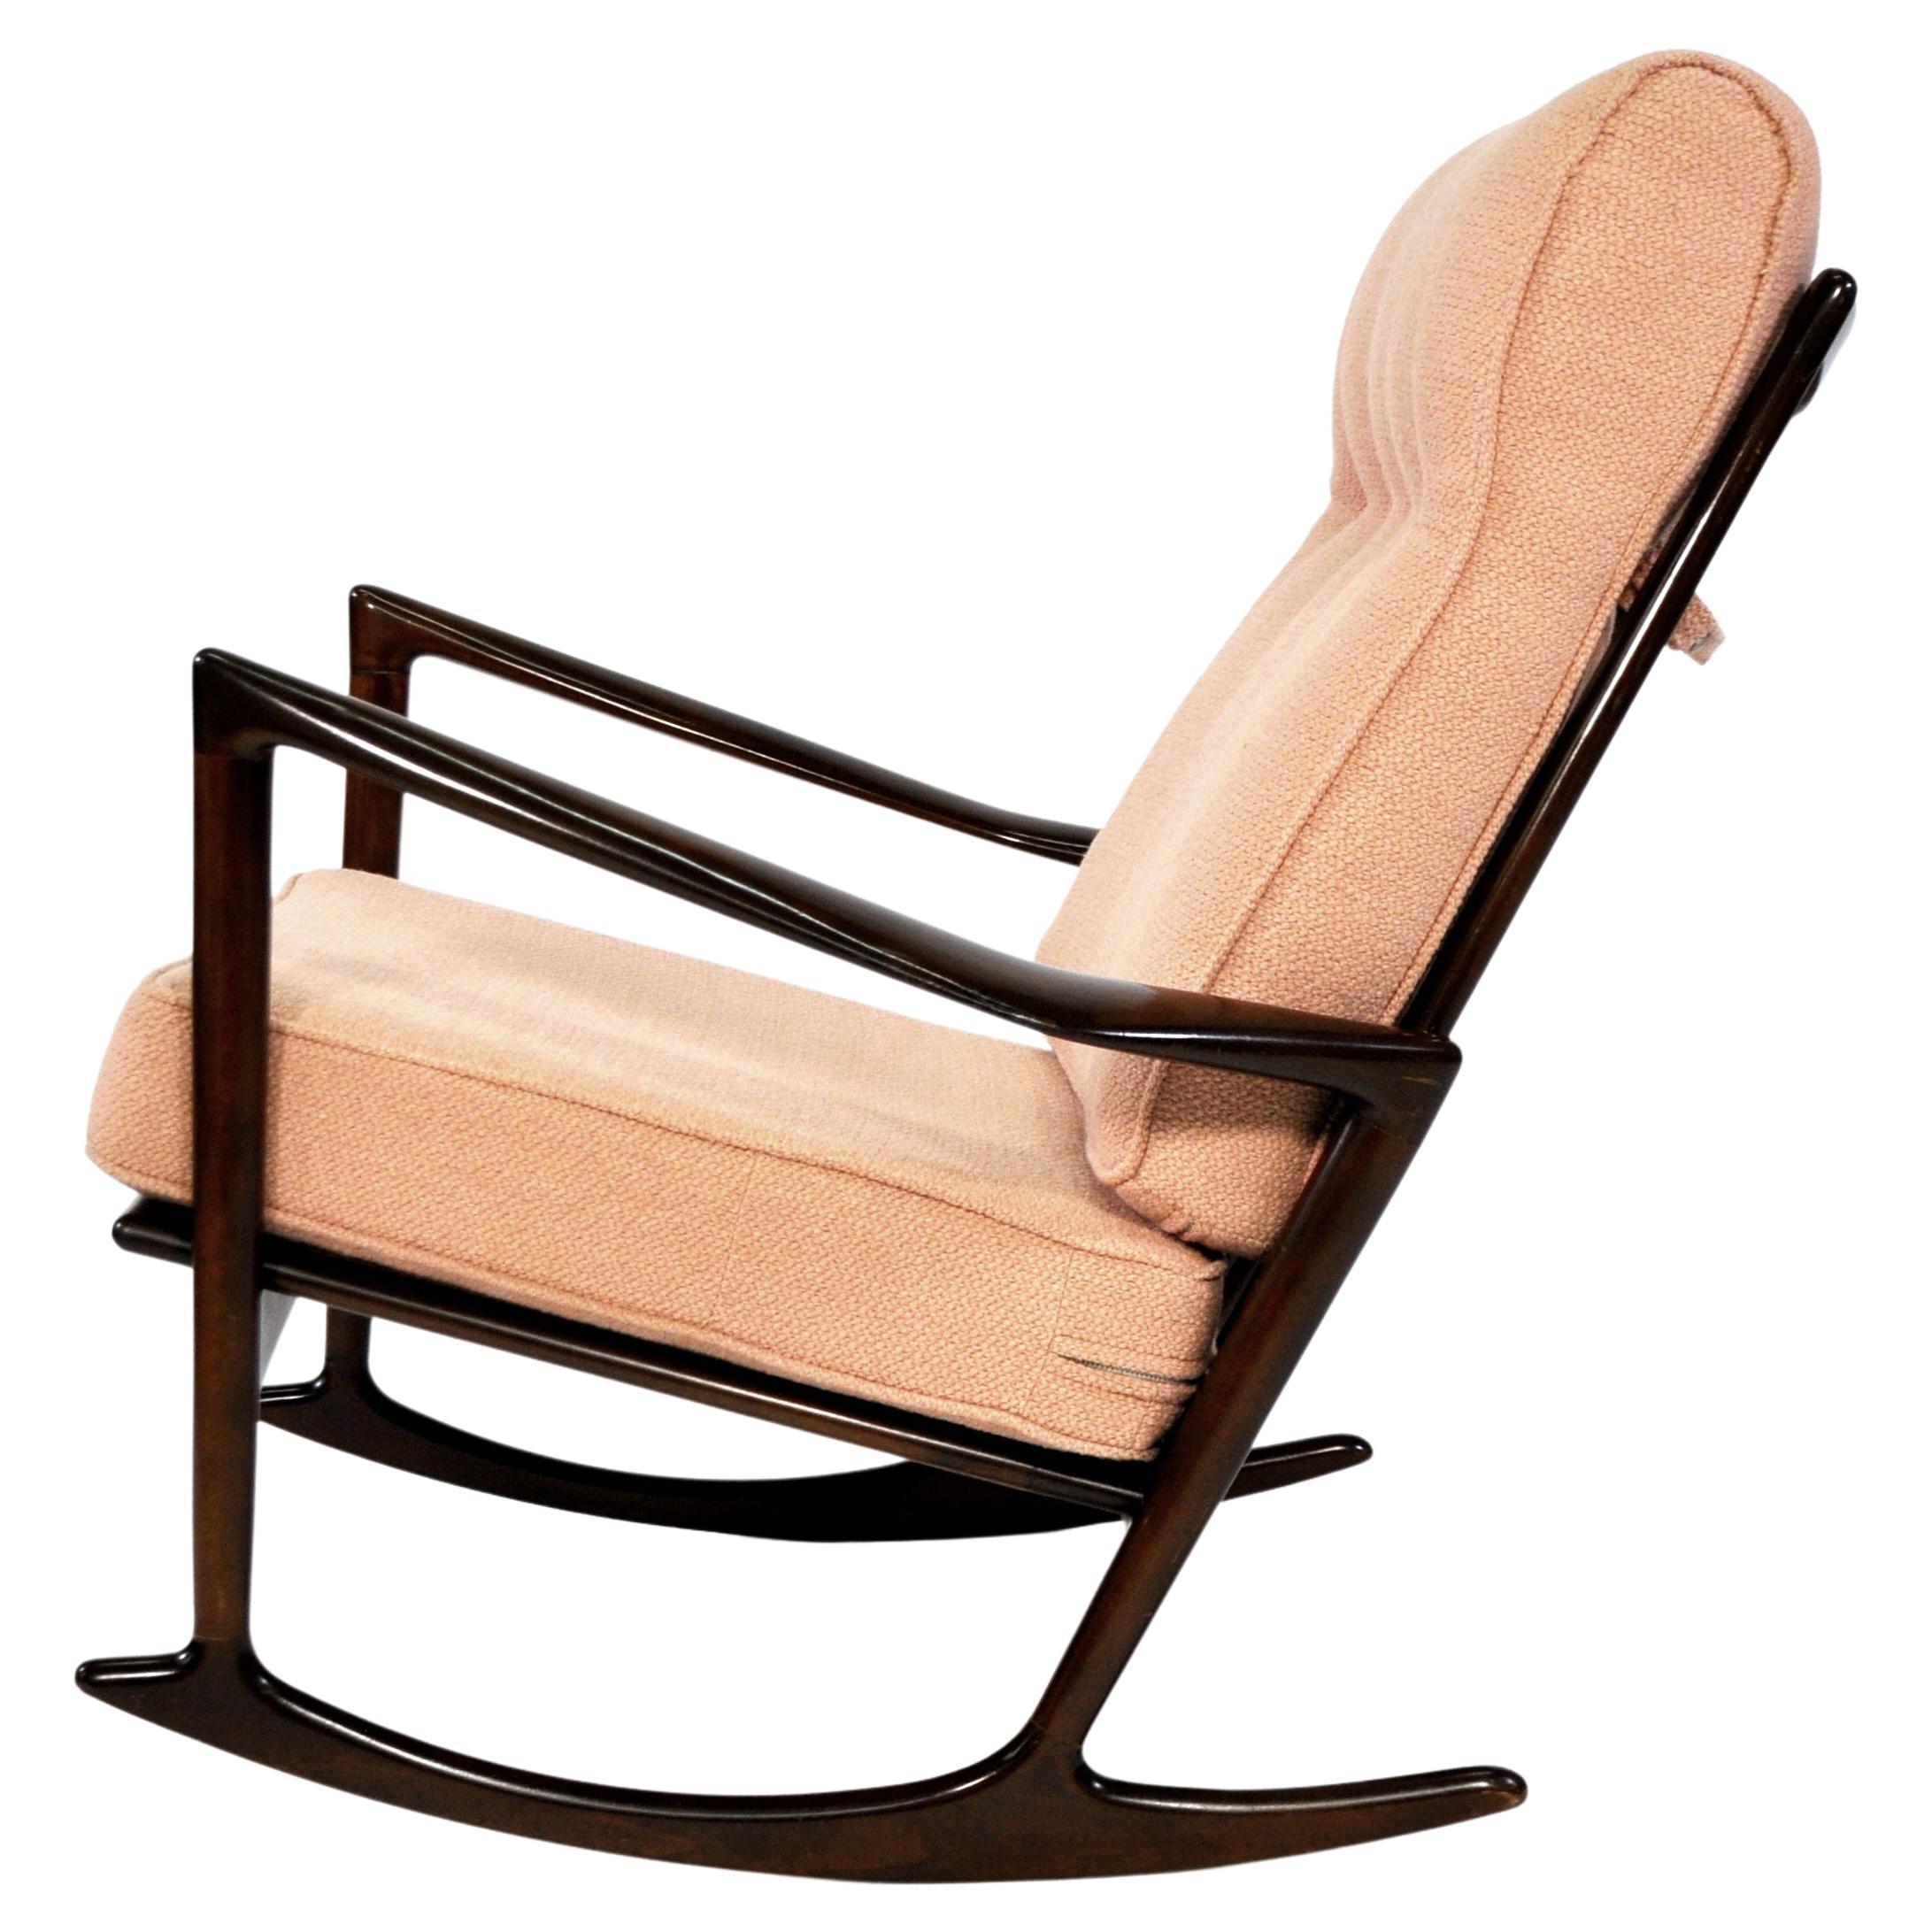 Rare fauteuil à bascule moderne danois du milieu du siècle, modèle 650-15, conçu par Ib Kofod-Larsen pour Selig au Danemark, vers les années 1960. Cette élégante chaise à bascule a une structure en bois de hêtre teintée de noyer avec un dossier